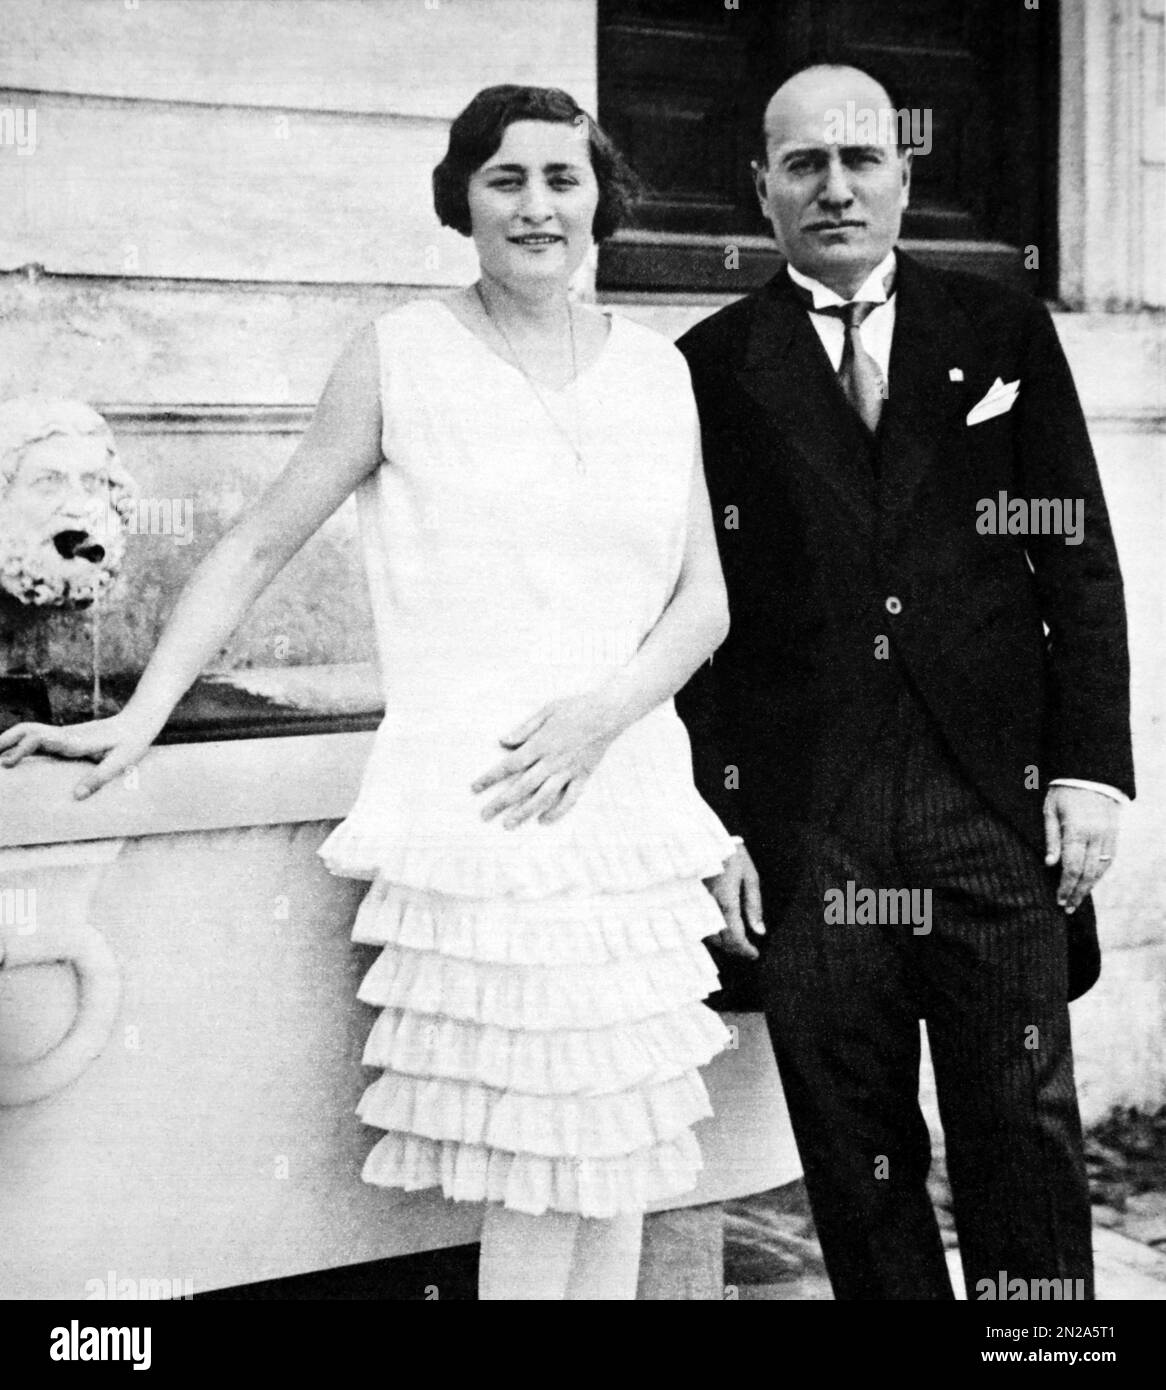 1928 ca ,  ROME , ITALY :  EDDA MUSSOLINI ( 1910 - 1995 ) with father italian Fascist Duce dictator Benito MUSSOLINI ( 1883 - 1945 ) at Villa Torlonia . The day 24 april 1930 Edda married the count Galeazzo CIANO ( 1903 - 1944 ) . Unknown photographer. - HISTORY - FOTO STORICHE - PORTRAIT - RITRATTO - CONTESSA - Countess - nobili - nobile - nobiltà italiana - italian nobility - portrait - ritratto - FASCISTA - FASCIST - FASCISMO - FASCISM - abito vestito bianco - white dress - ROMA - ITALIA  - padre e figlia - father and daughter ---  Archivio GBB Stock Photo